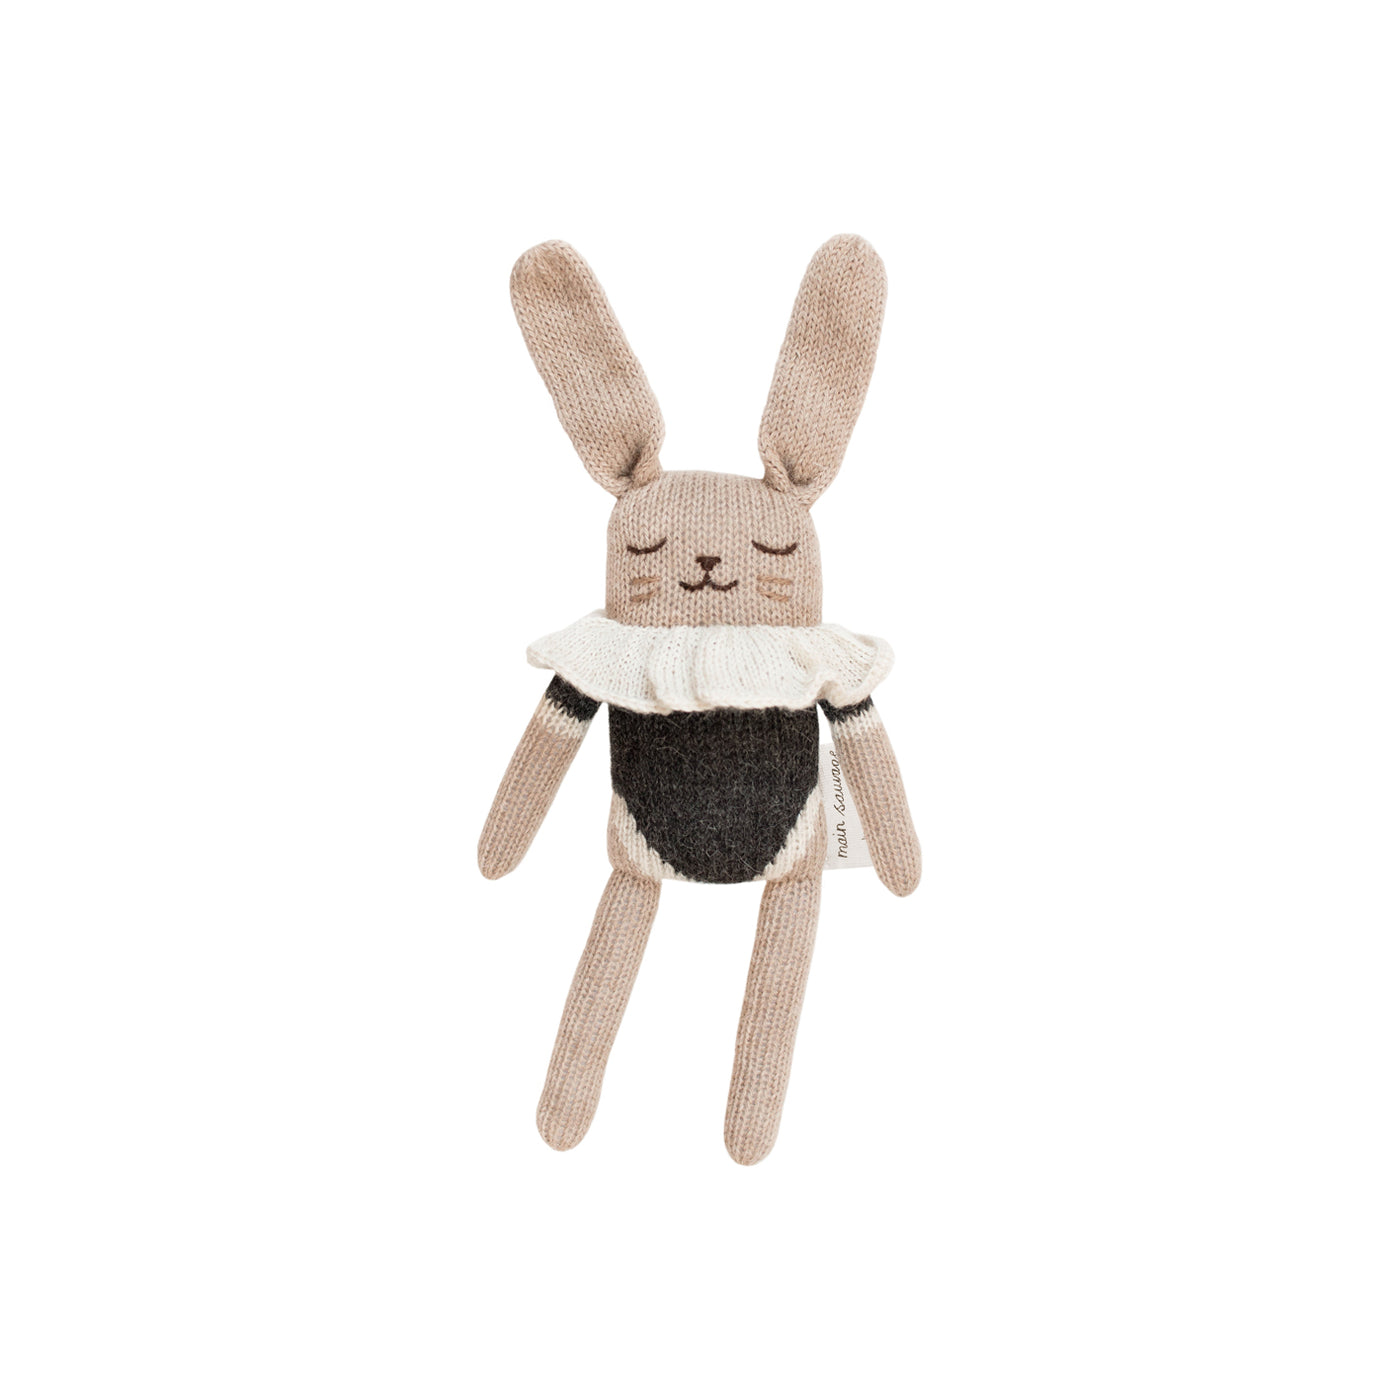 Bunny Knit Toy with Black Bodysuit